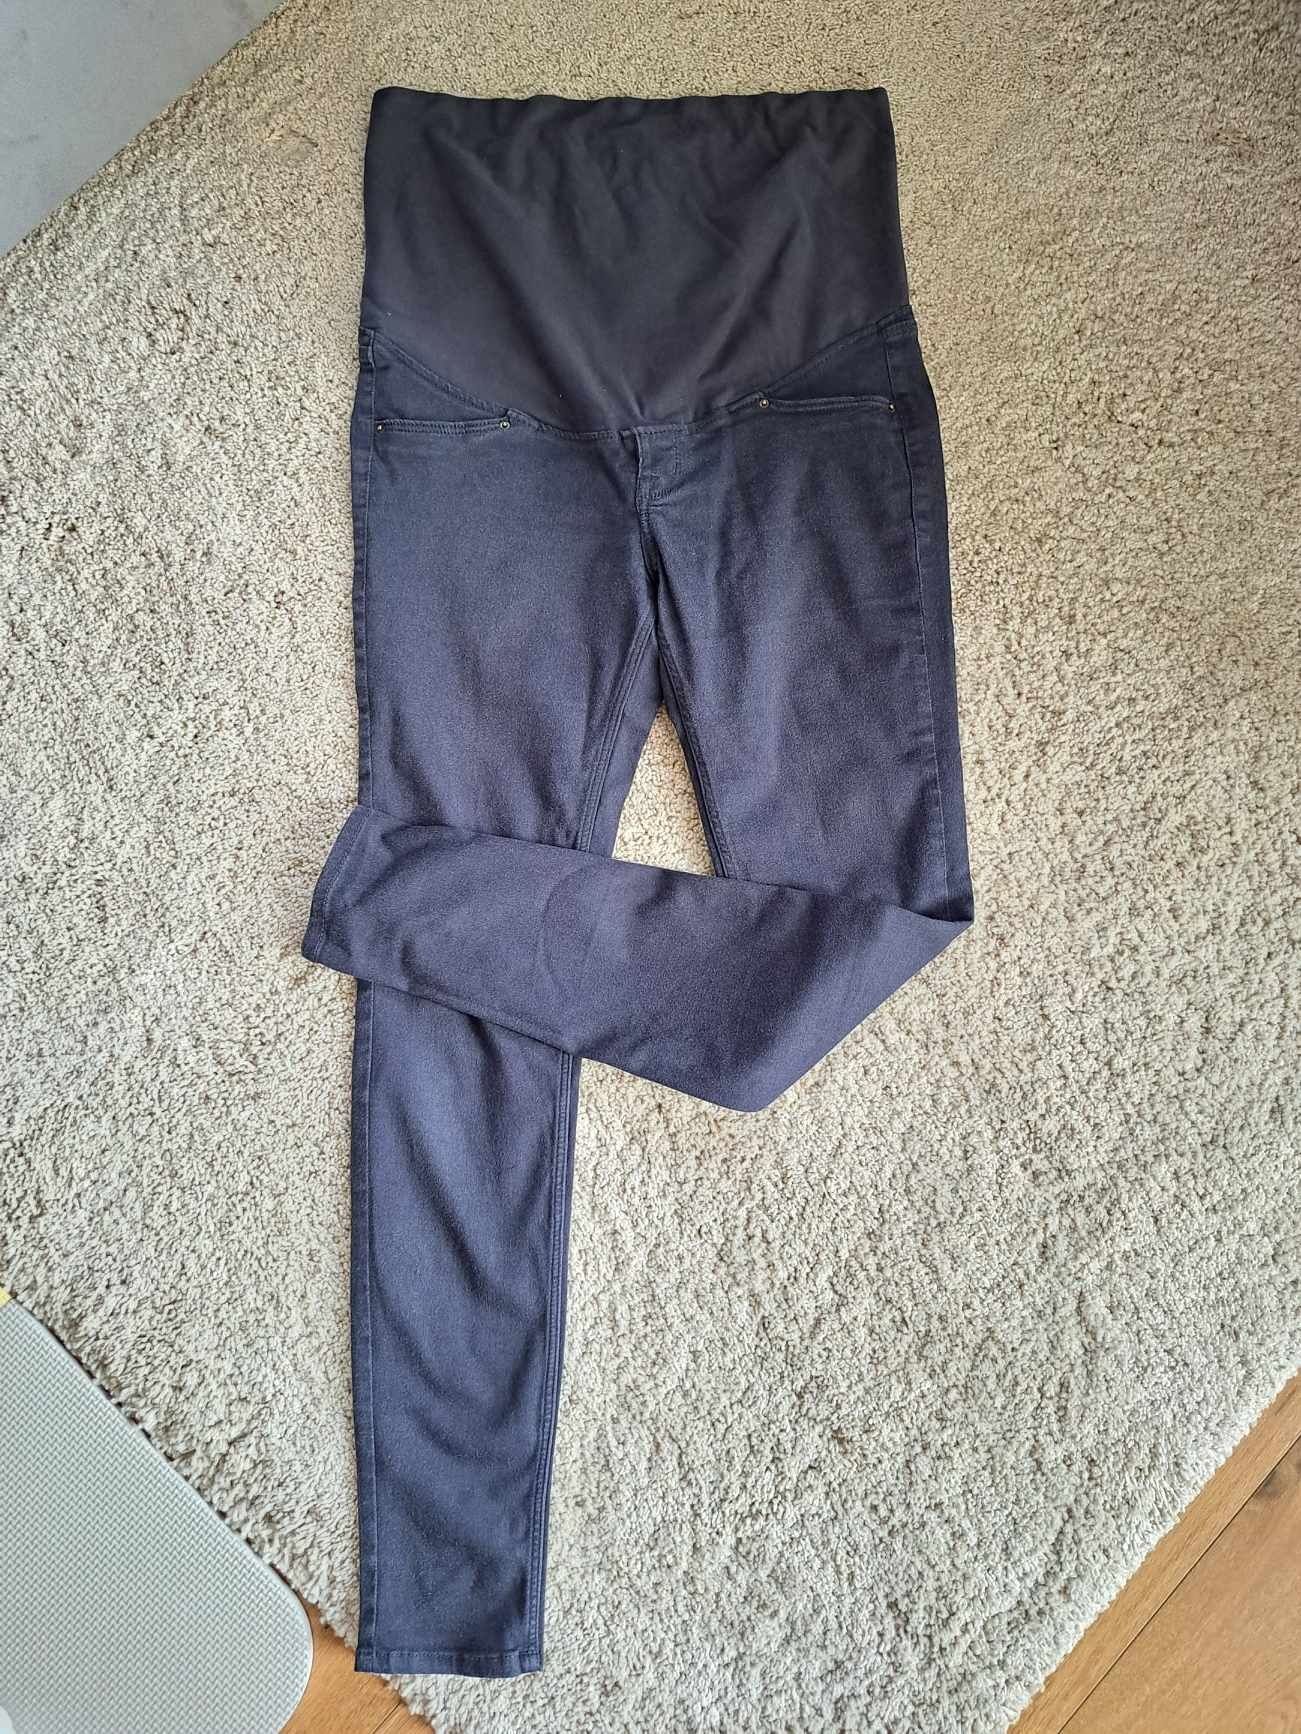 Jeansy miękkie ciążowe spodnie h&m 42 
Granatowe szare 
H&M rozmiar 42